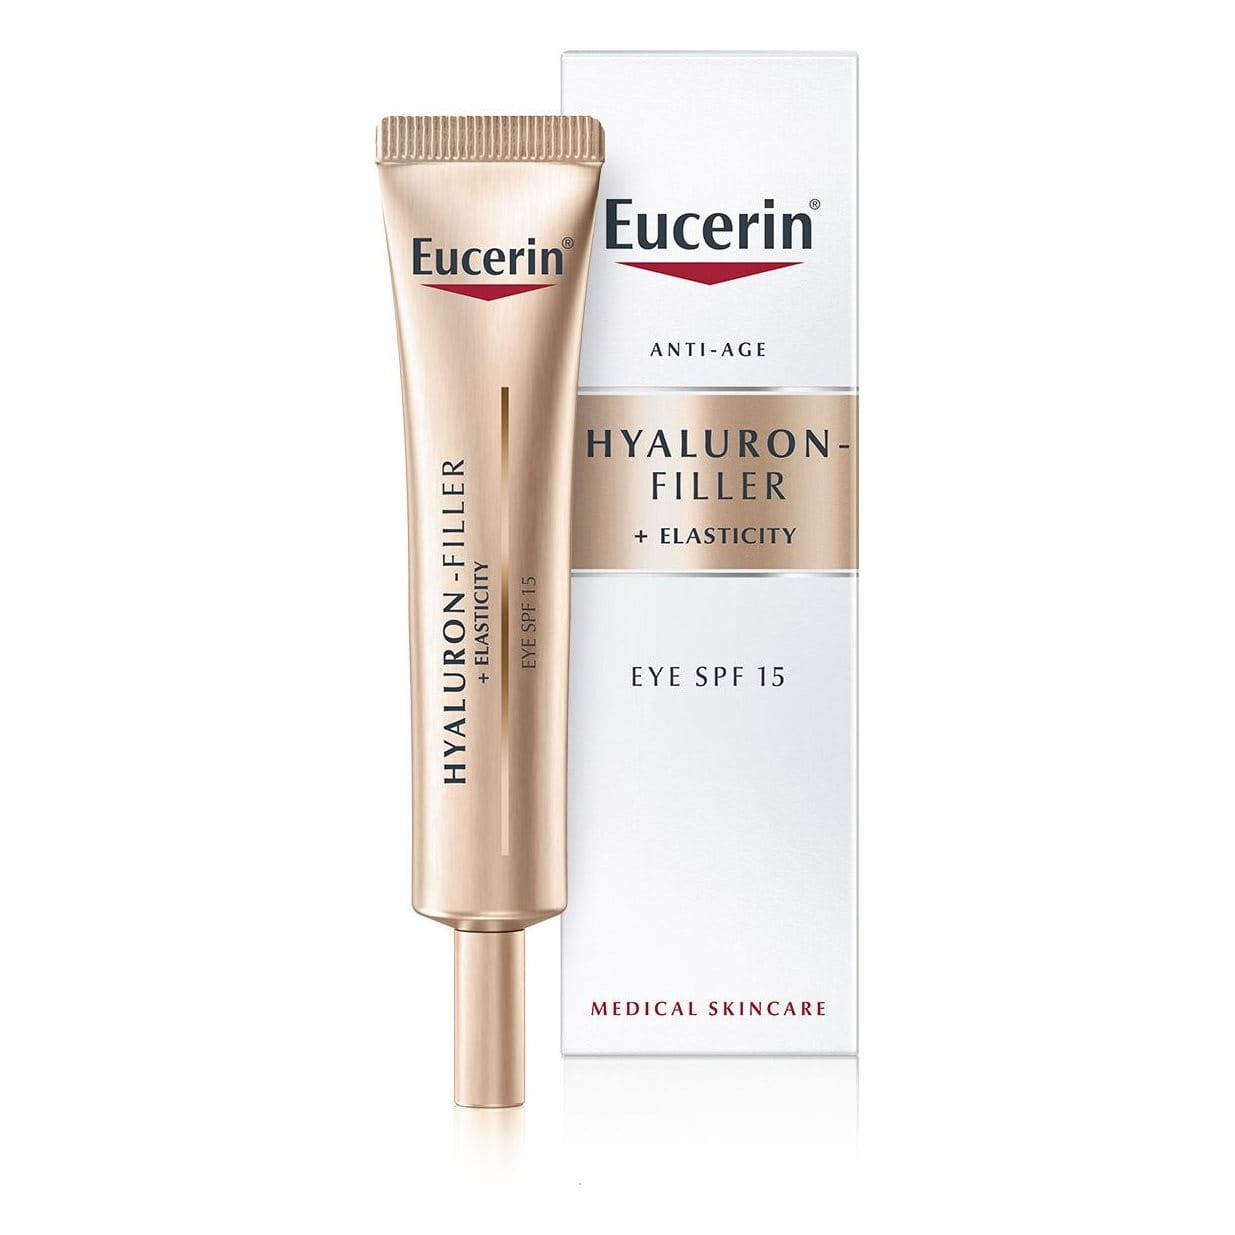 Eucerin Hyaluron-Filler + Elasticity Eye SPF 15